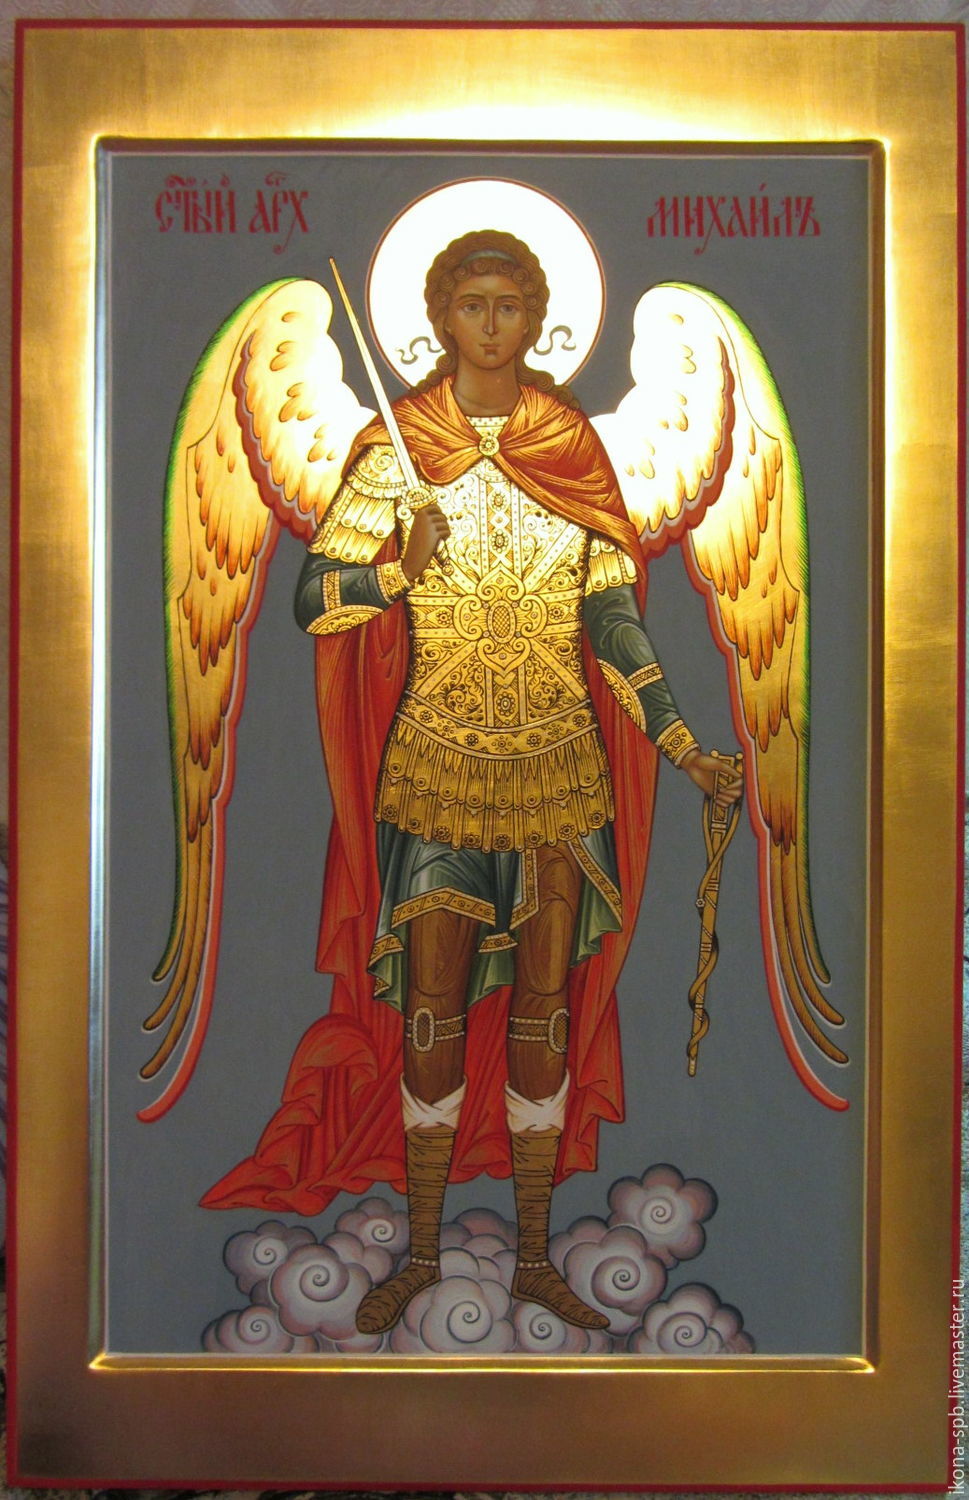 Как выглядит икона архангела михаила фото